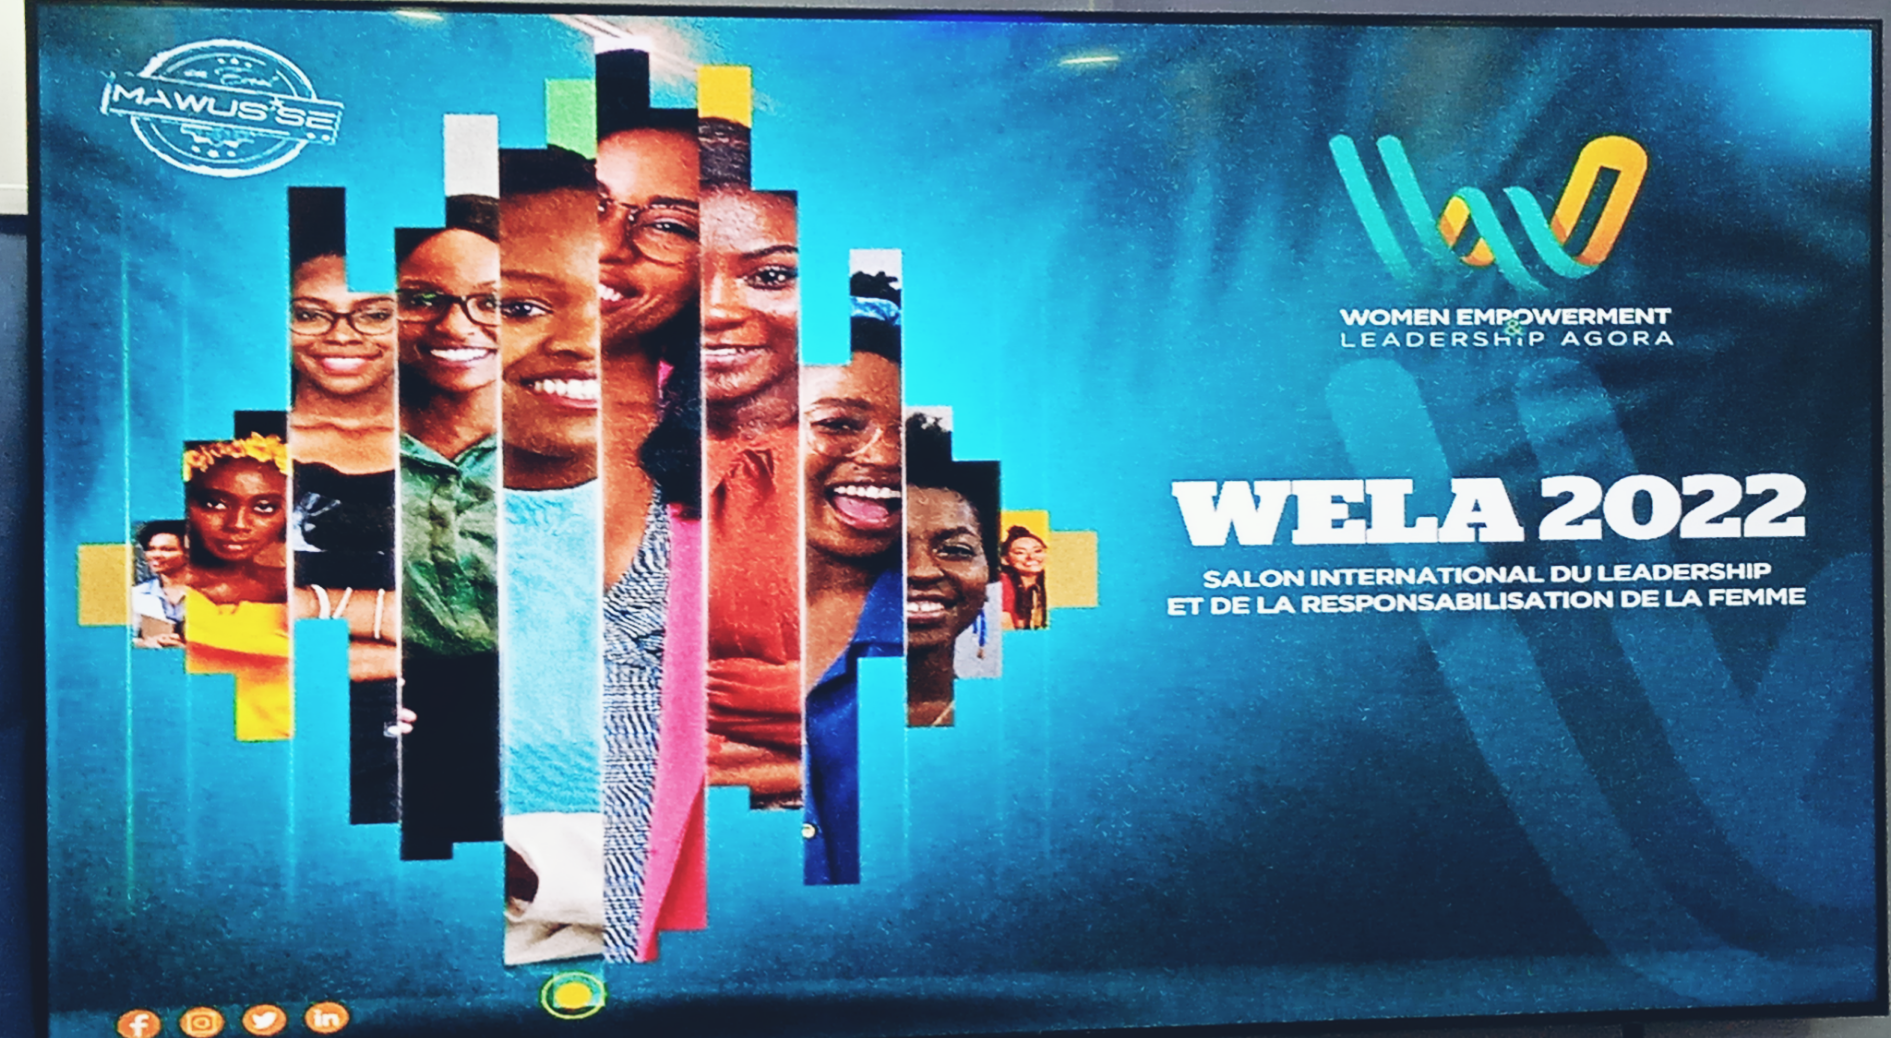 Côte d’Ivoire :Lancement de la 1ere édition du Forum international WELA (Women Empowerment & Leadership Agora )2022 ou Forum International du Leadership et de la Responsabilisation de la Femme.